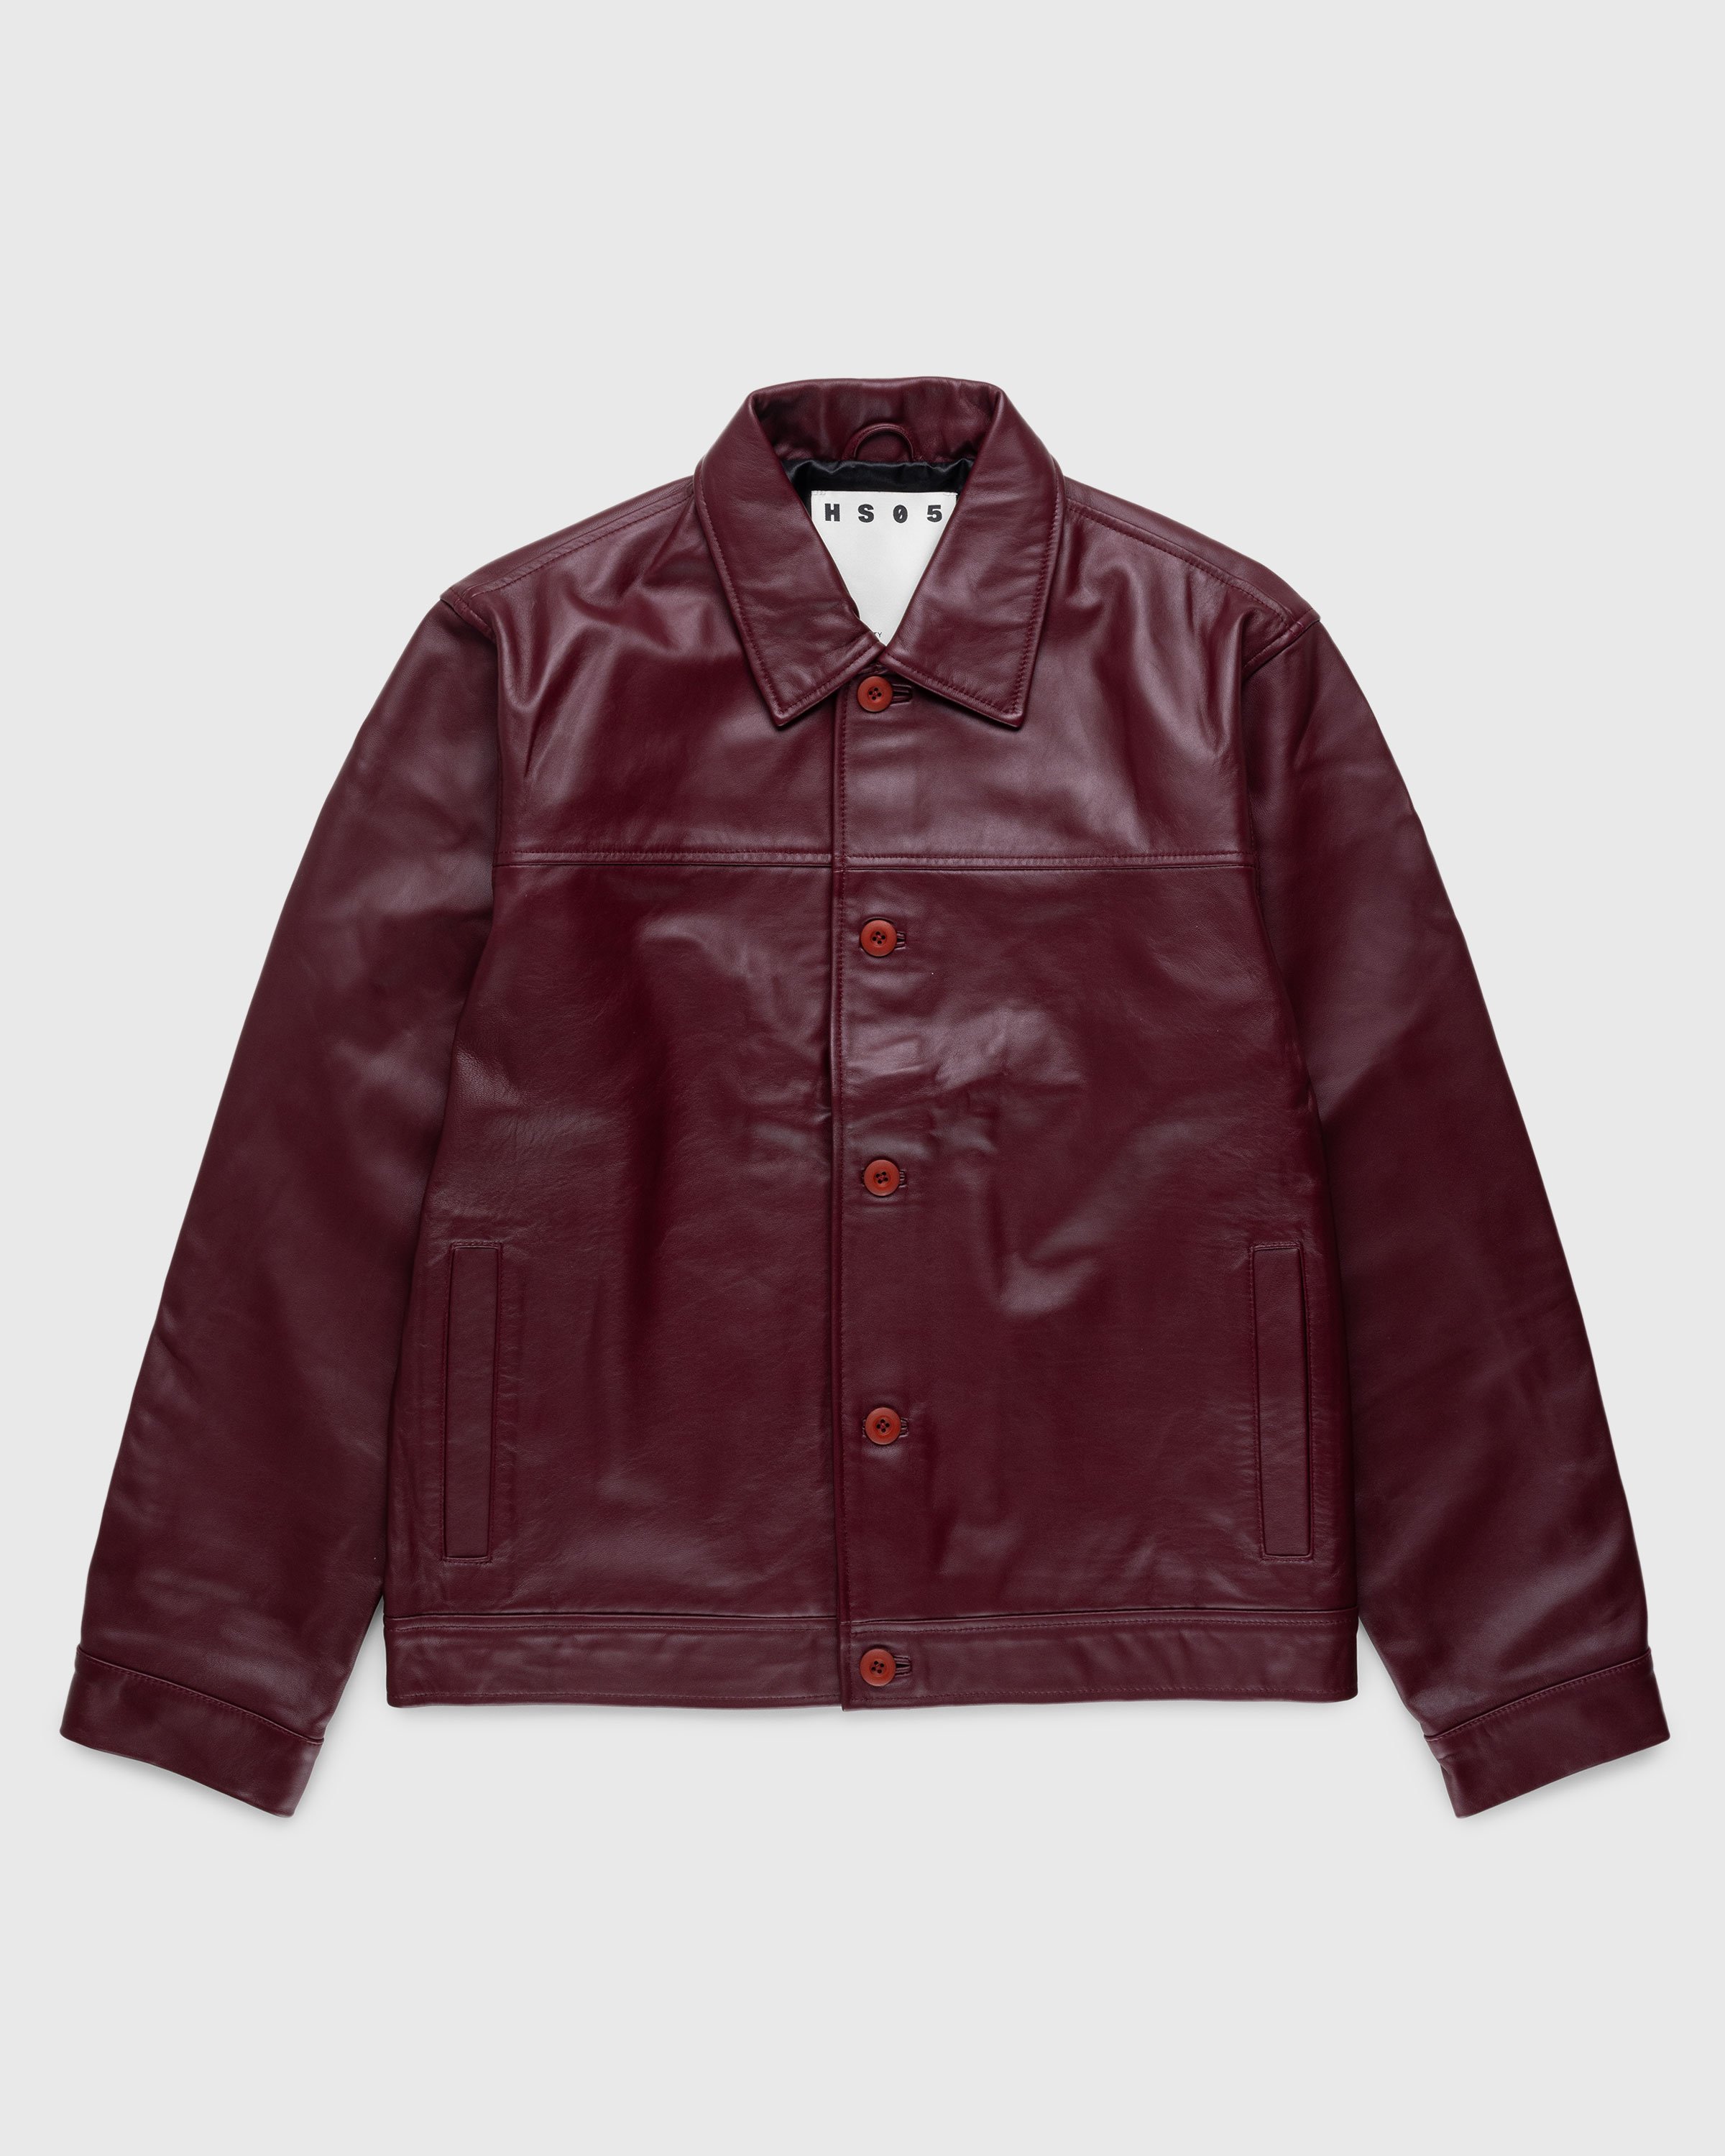 Highsnobiety - Neu York Leather Jacket Burgundy - Clothing - Red - Image 2